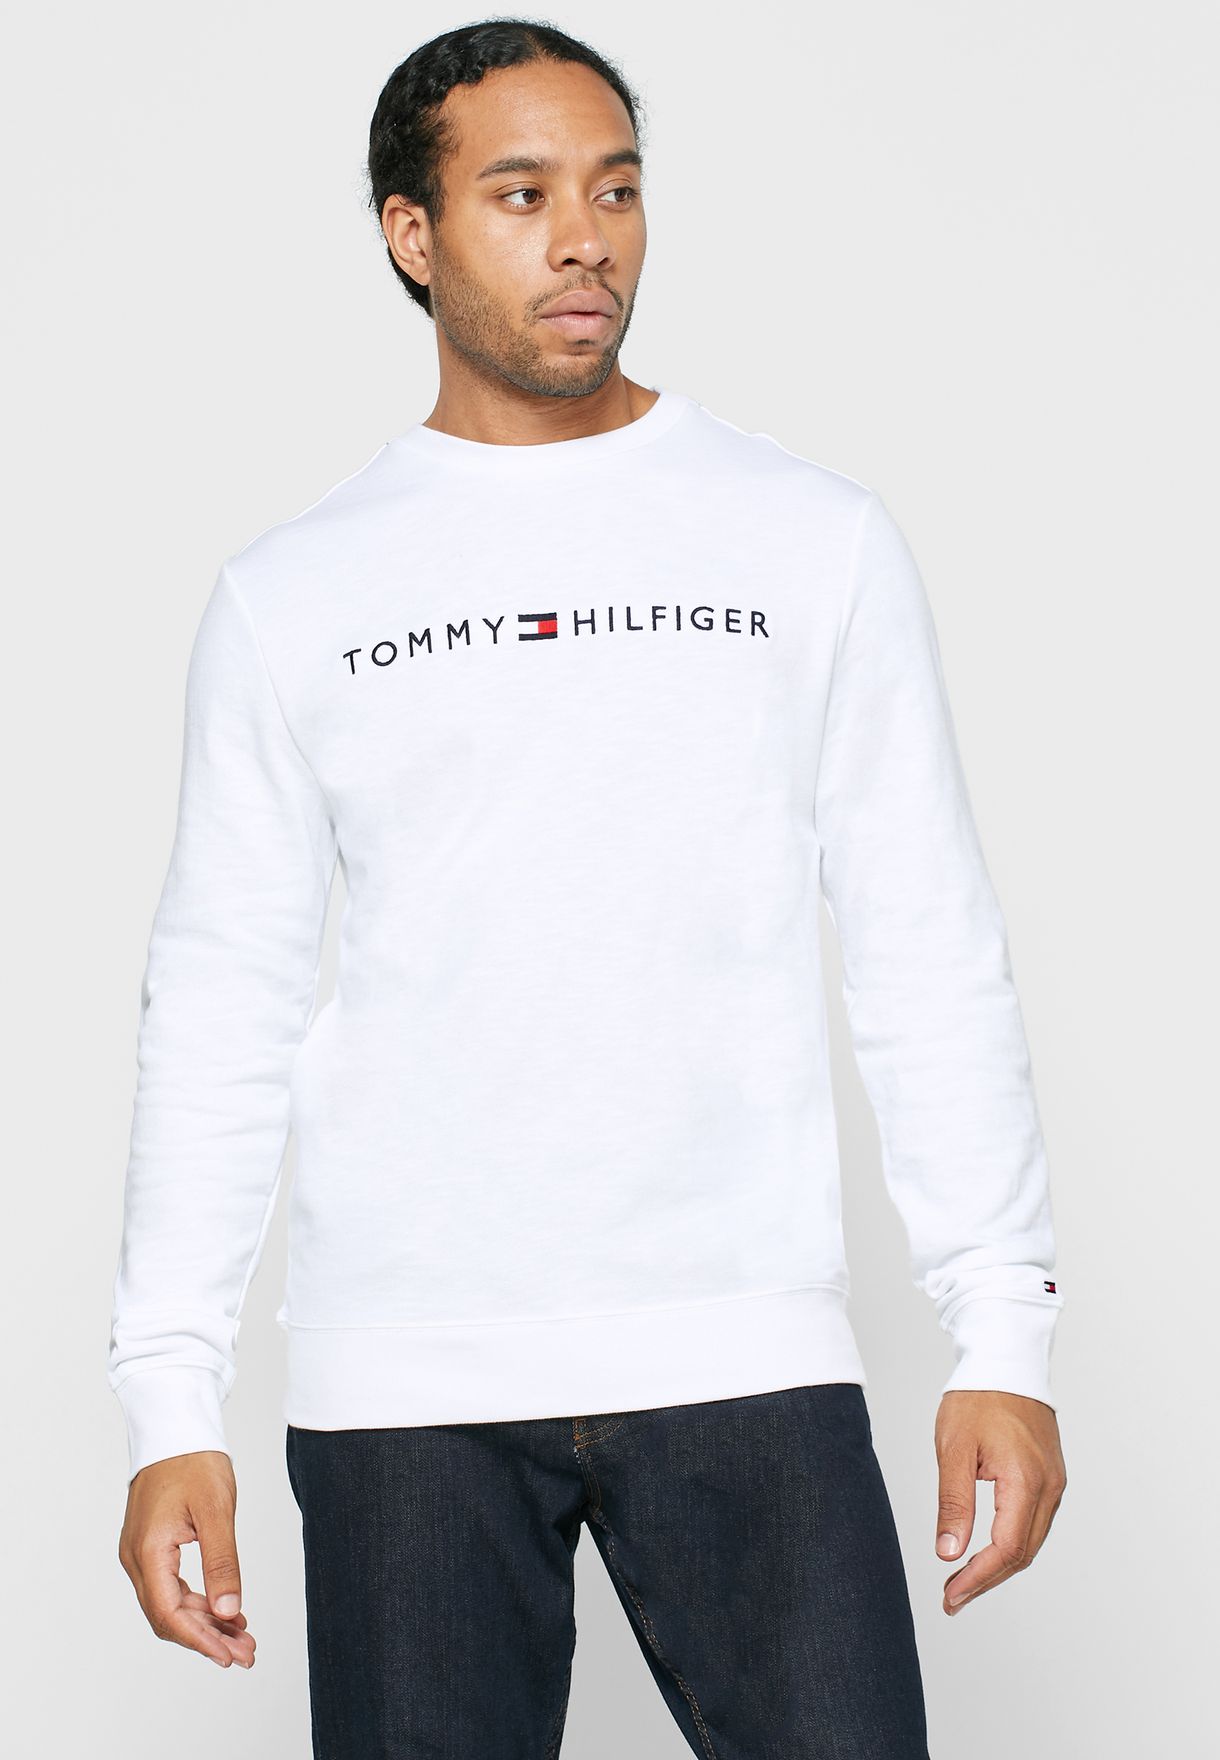 tommy hilfiger white sweatshirt mens